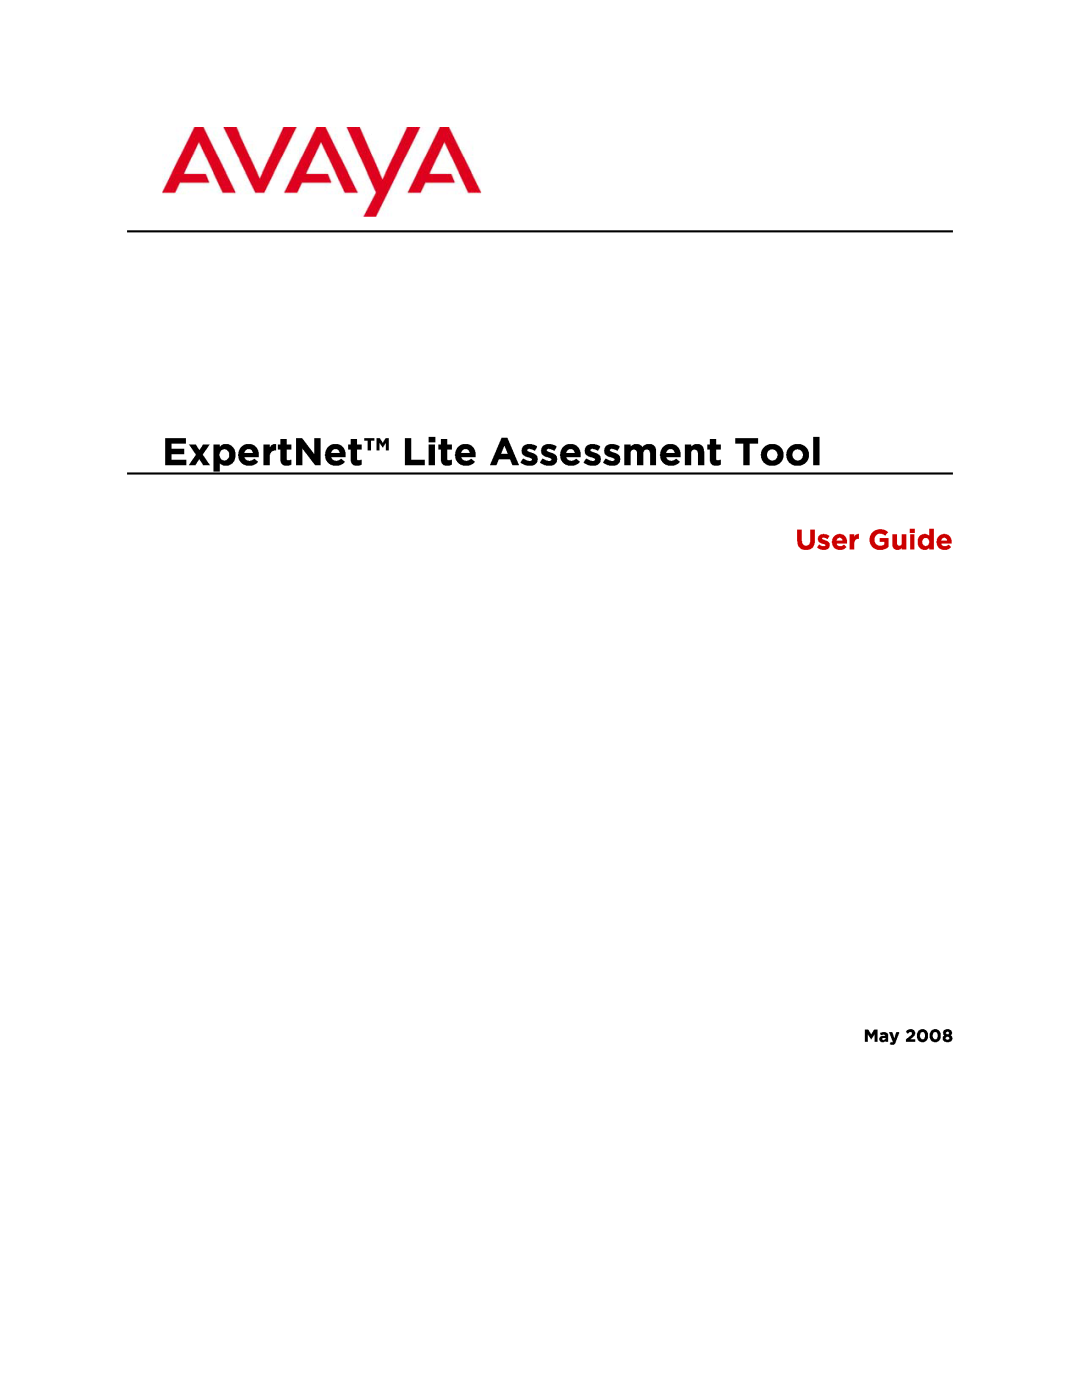 Avaya ELAT manual ExpertNet Lite Assessment Tool, User Guide 